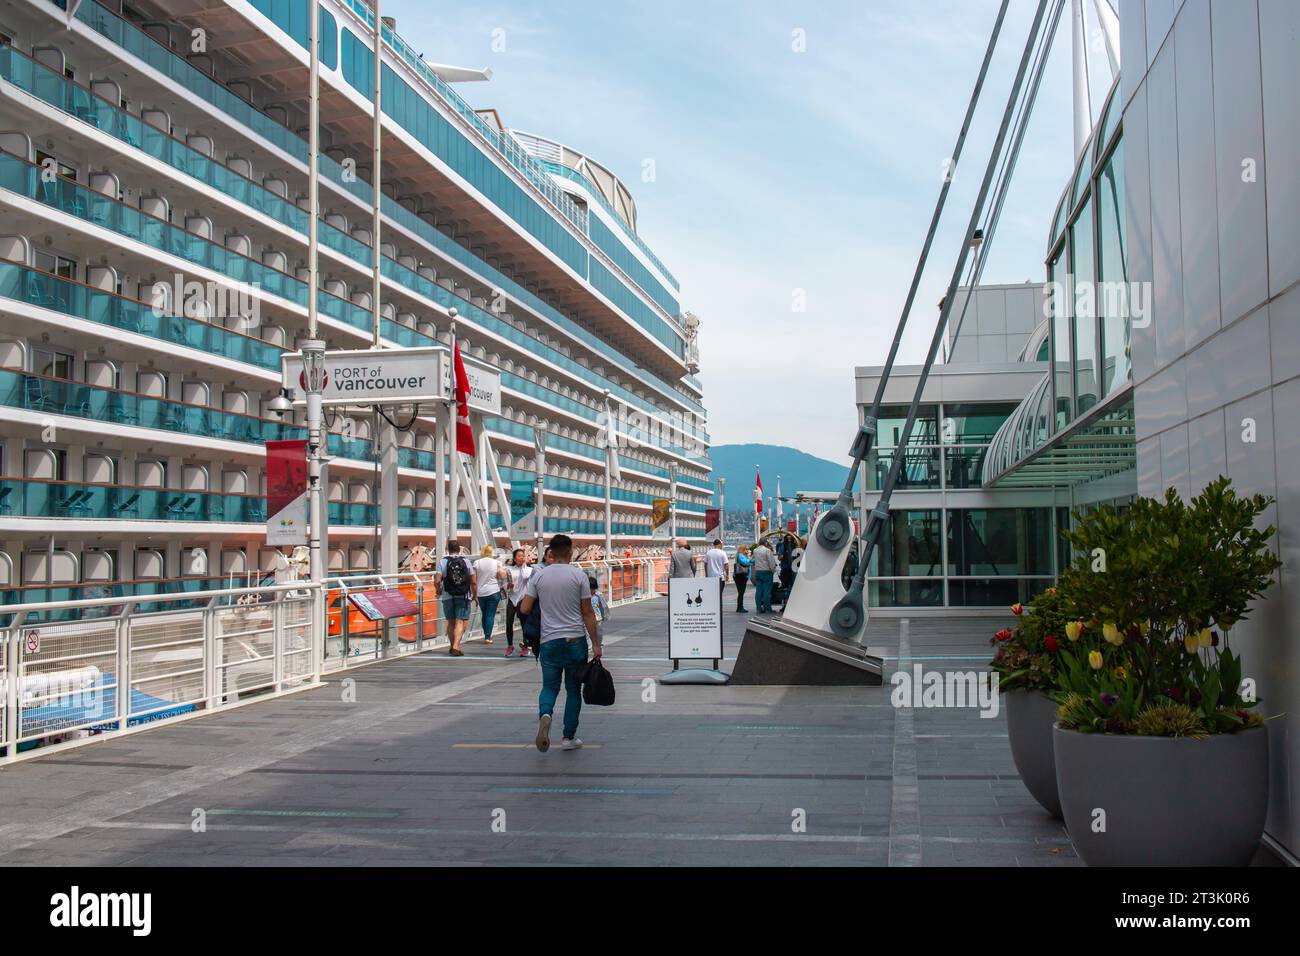 Immagine del porto di Vancouver nelle giornate di sole. Il porto di Vancouver è uno dei porti più grandi e significativi del Canada. Foto Stock